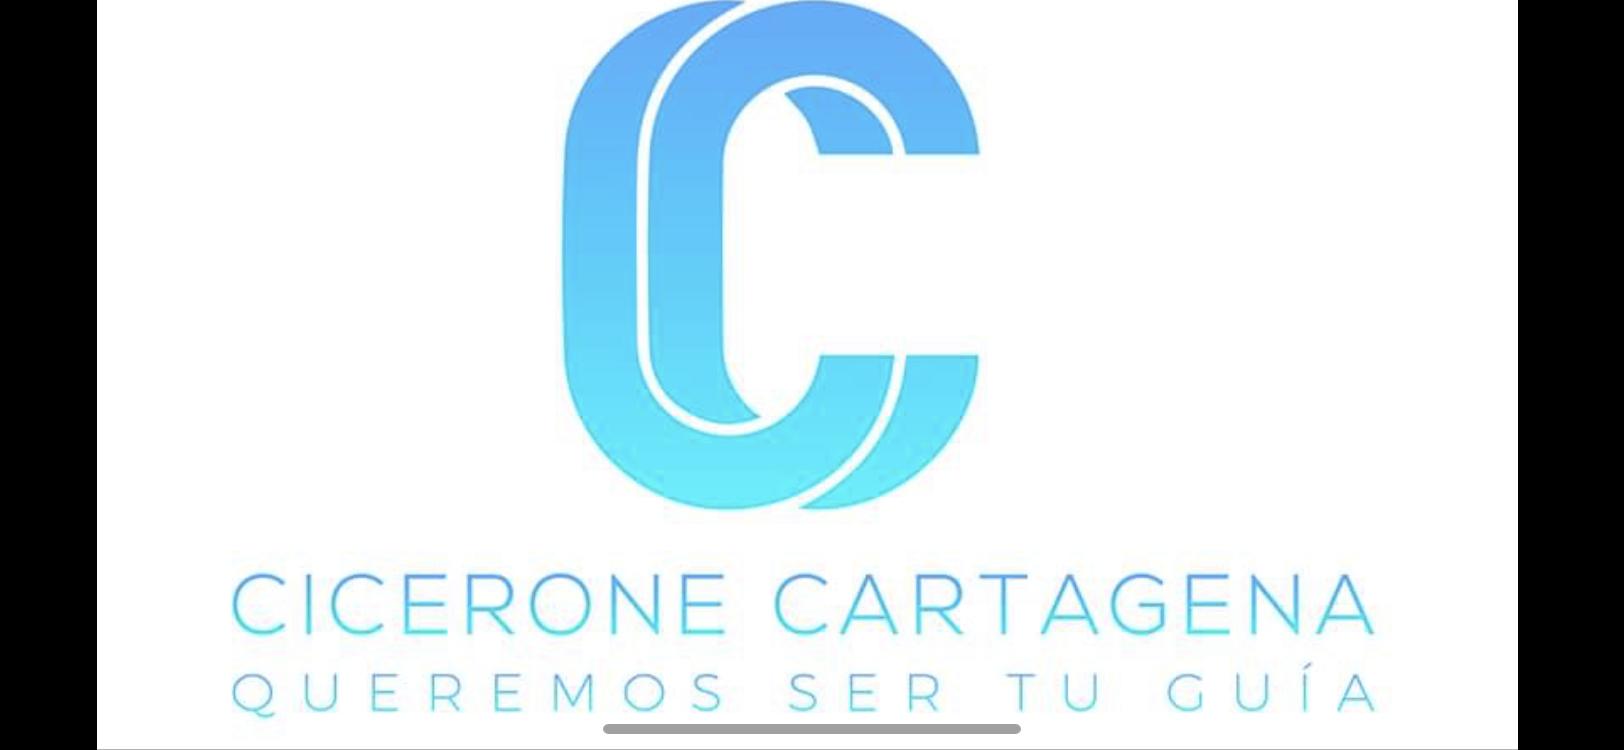 Guia Turistica En Cartagena Cicerone Cartagena